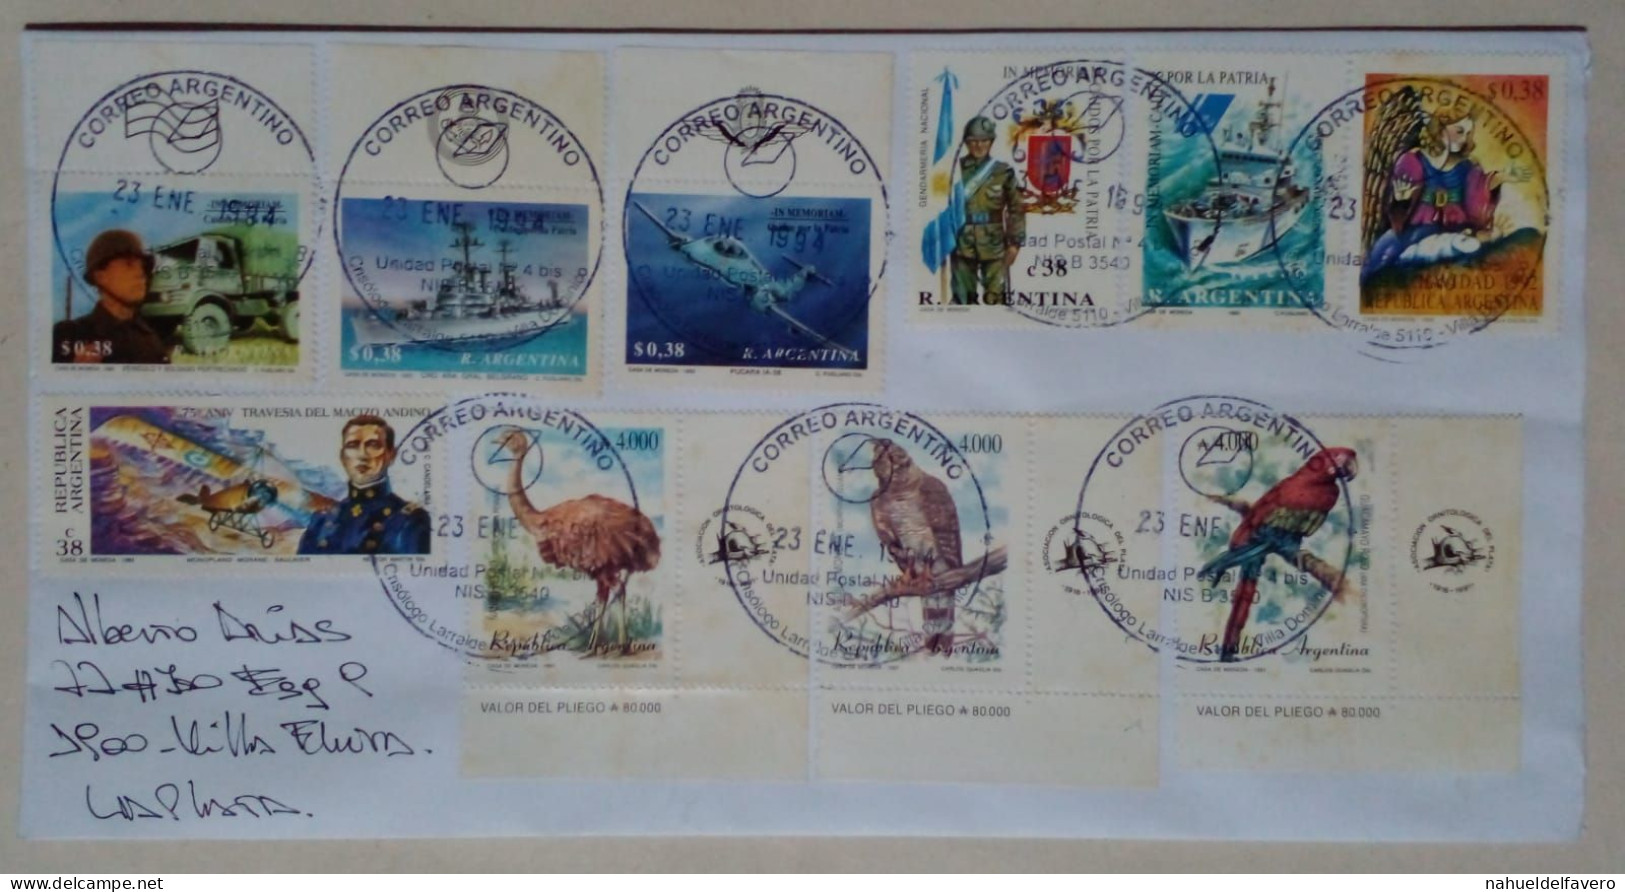 Argentine - Enveloppe Circulée Avec Thèmes Héros De Guerre / Noël / Oiseaux Indigènes (1994) - Used Stamps